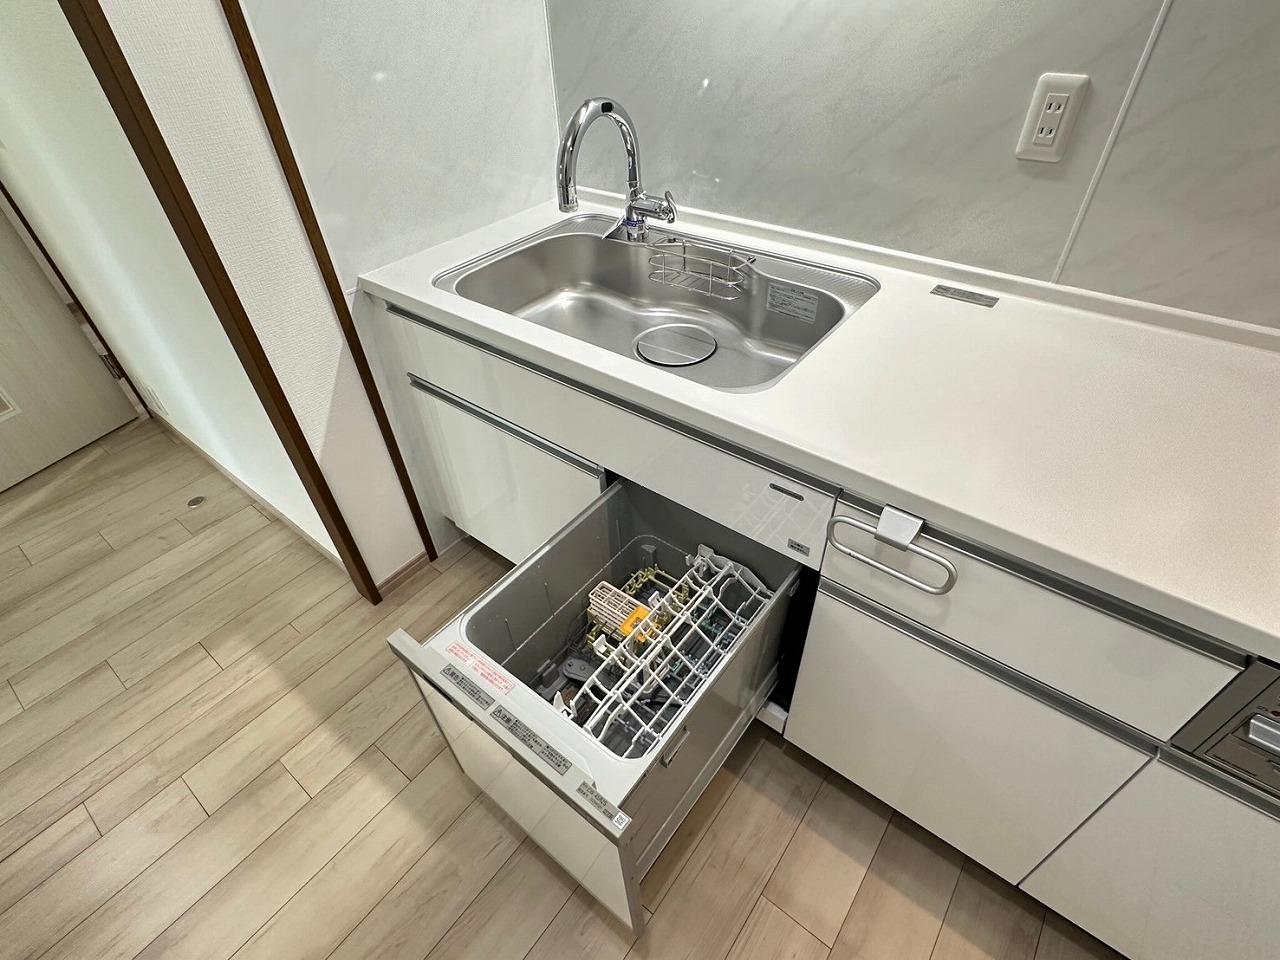 システムキッチン新品交換済み・食器洗い乾燥機・センサー式グースネック水栓付き